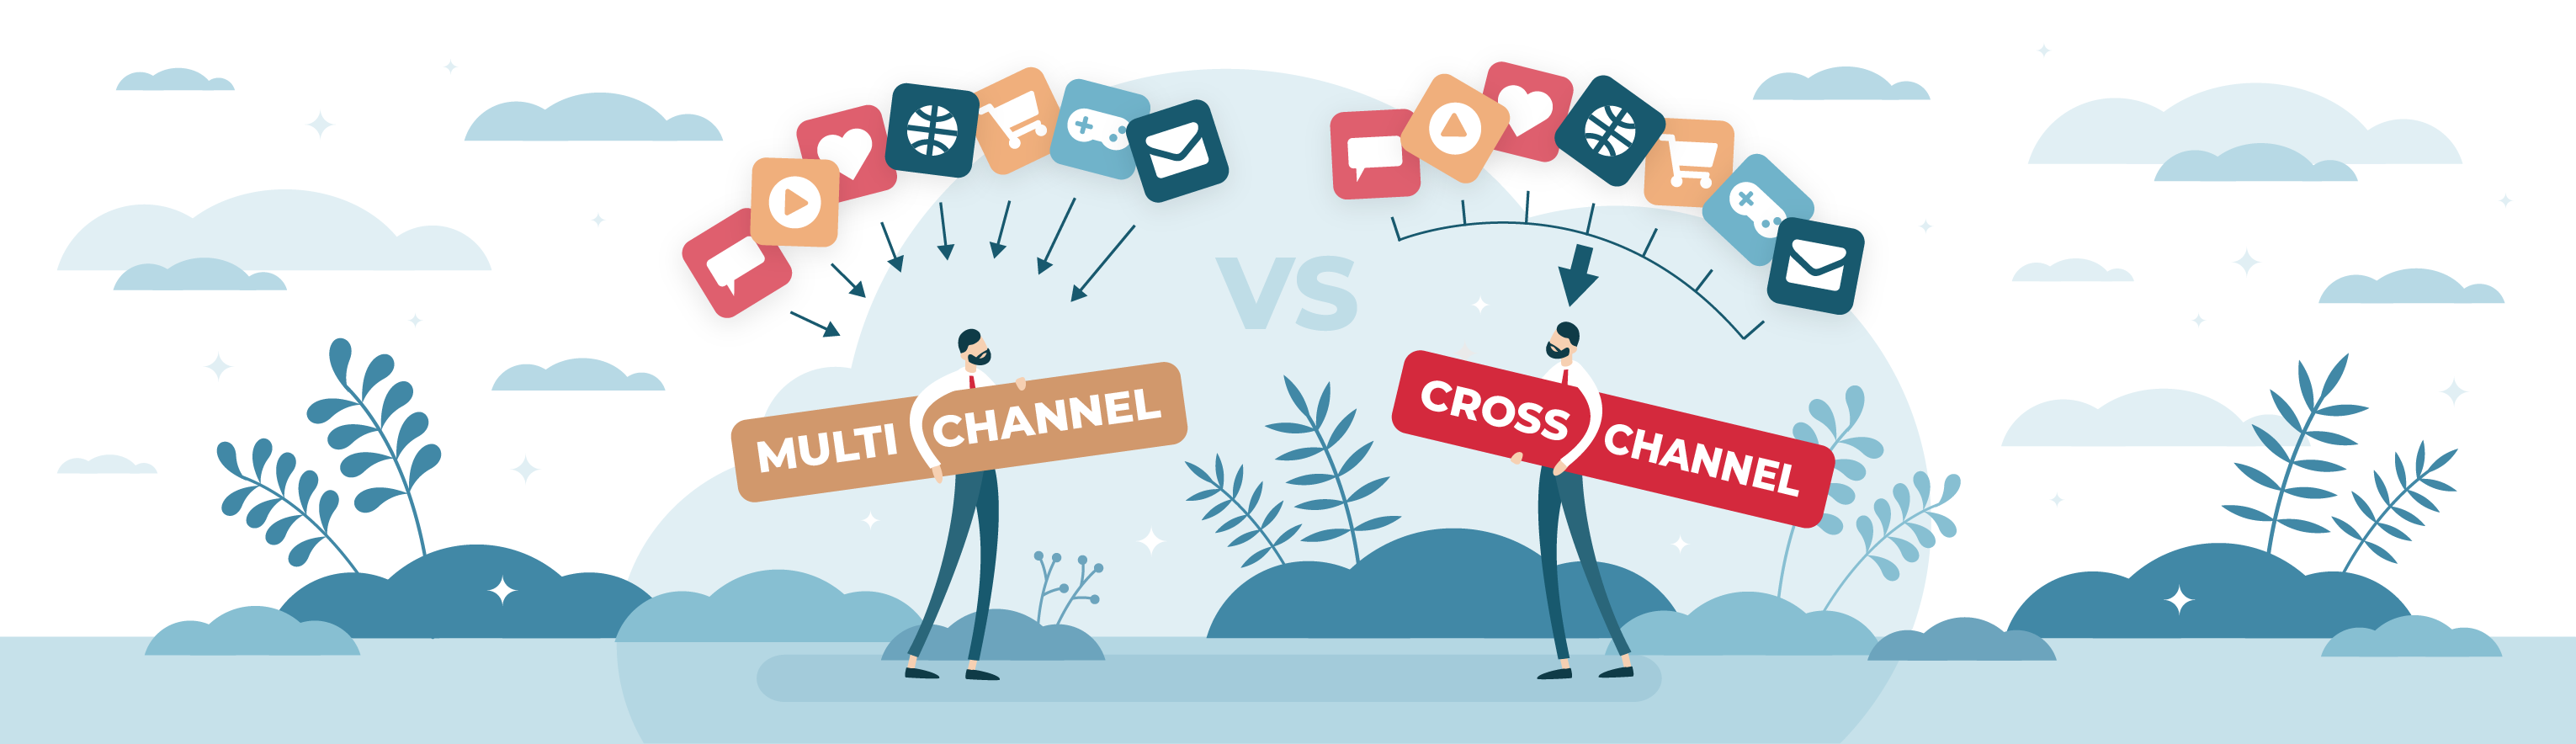 Cross-Channel Marketing vs. Multi-Channel Marketing